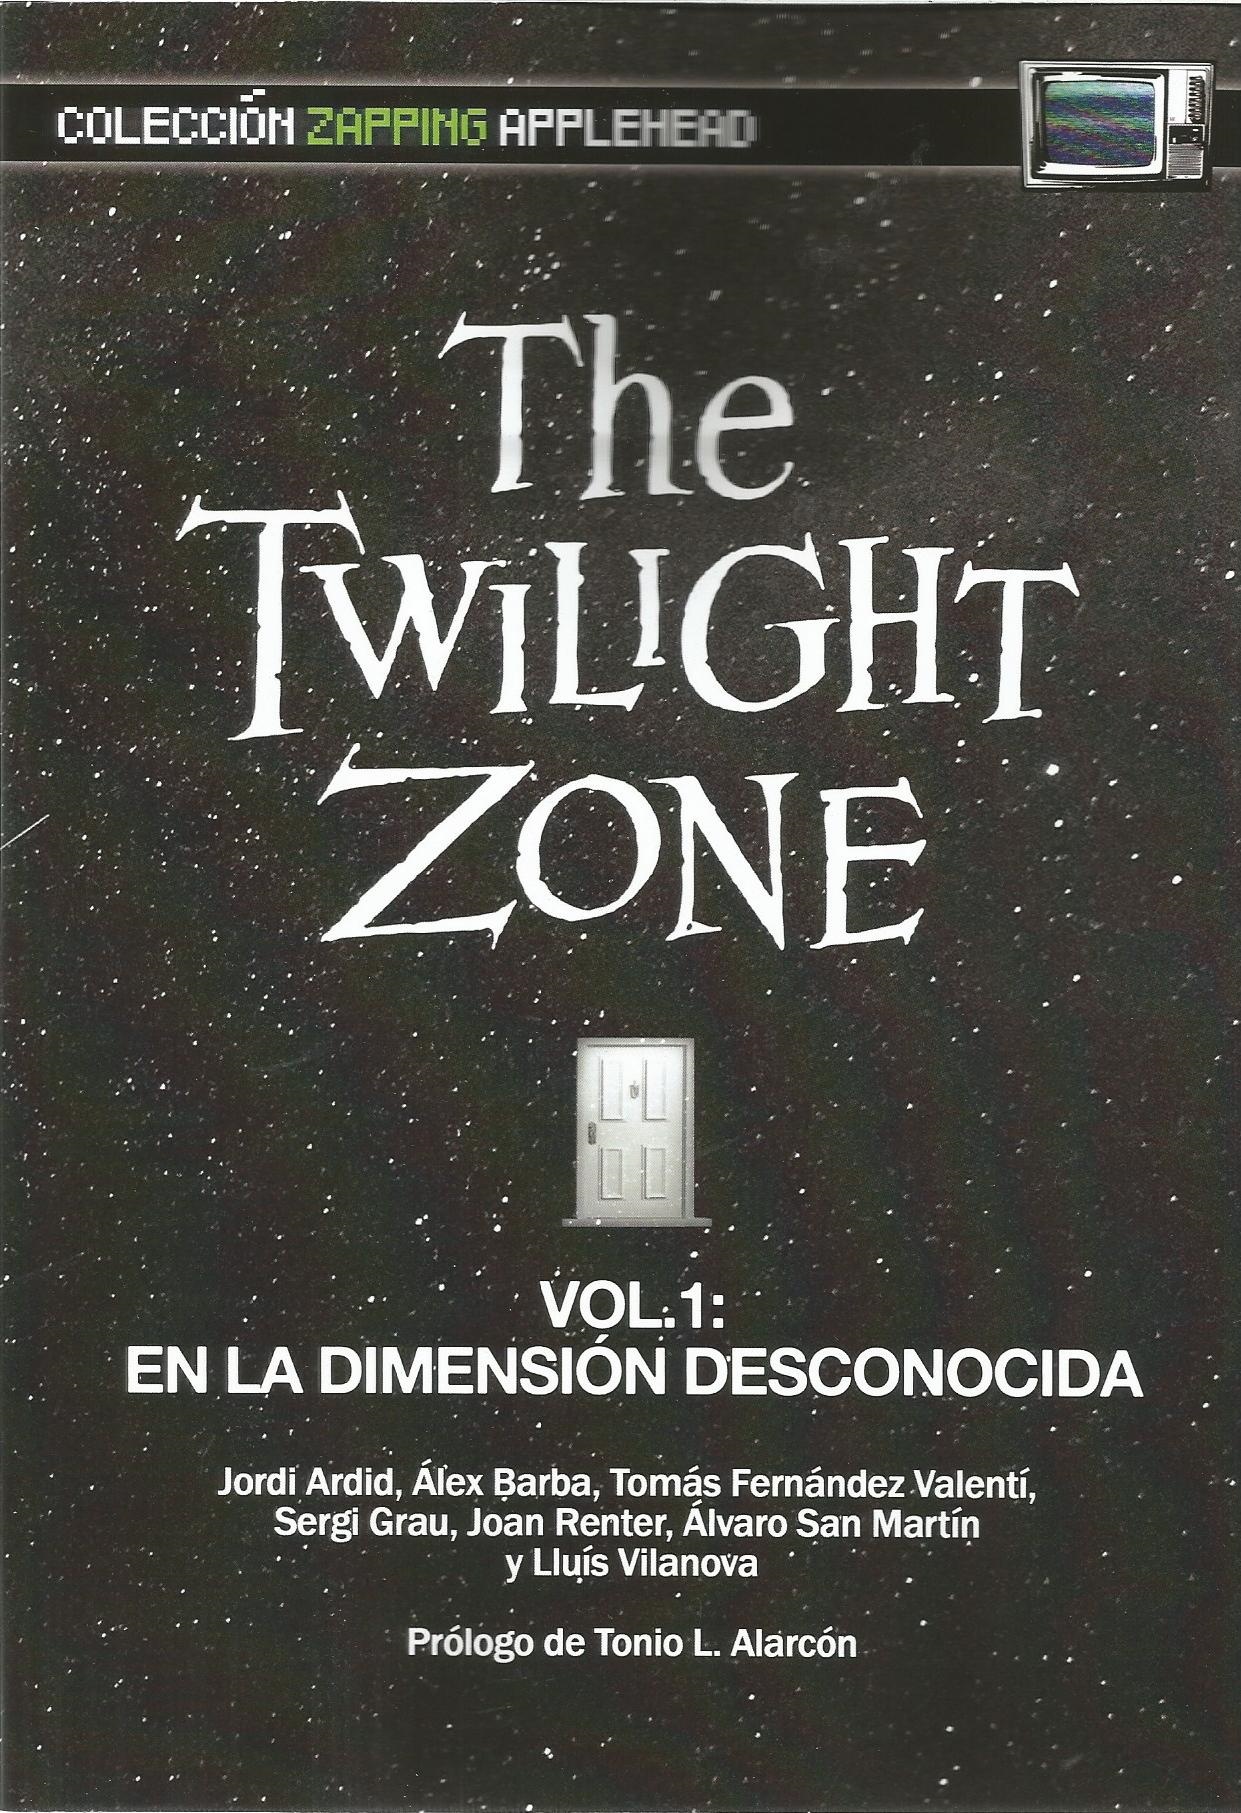 Twilight Zone vol 1. En la dimensión desconocida. 